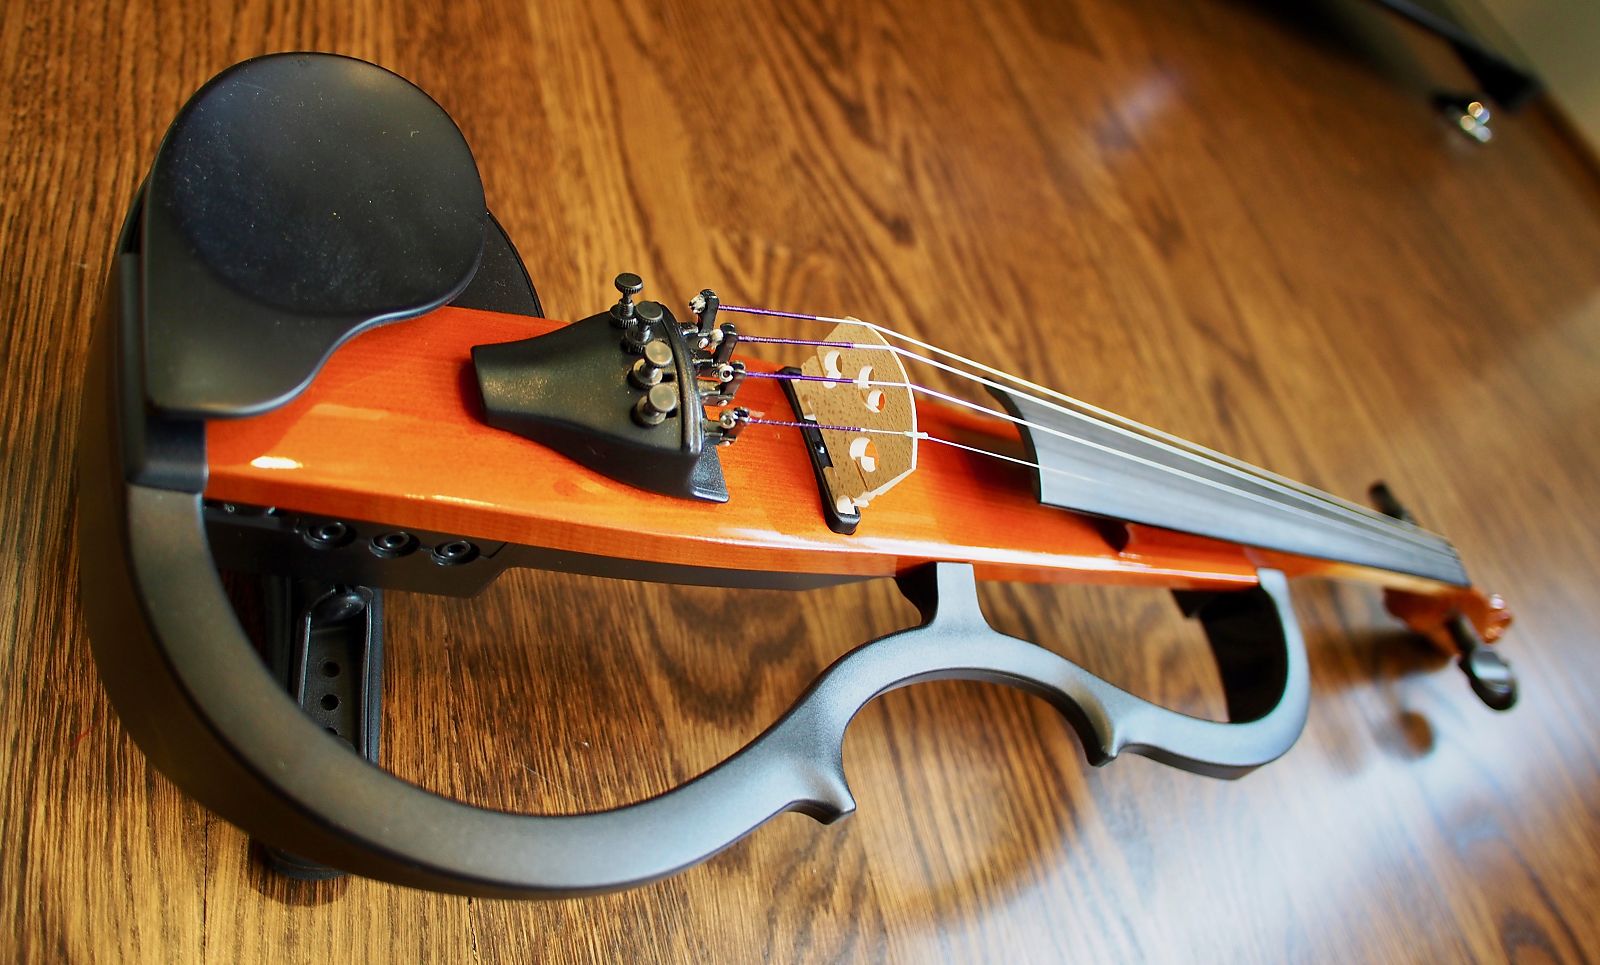 Yamaha SV-100K Silent Violin | Reverb